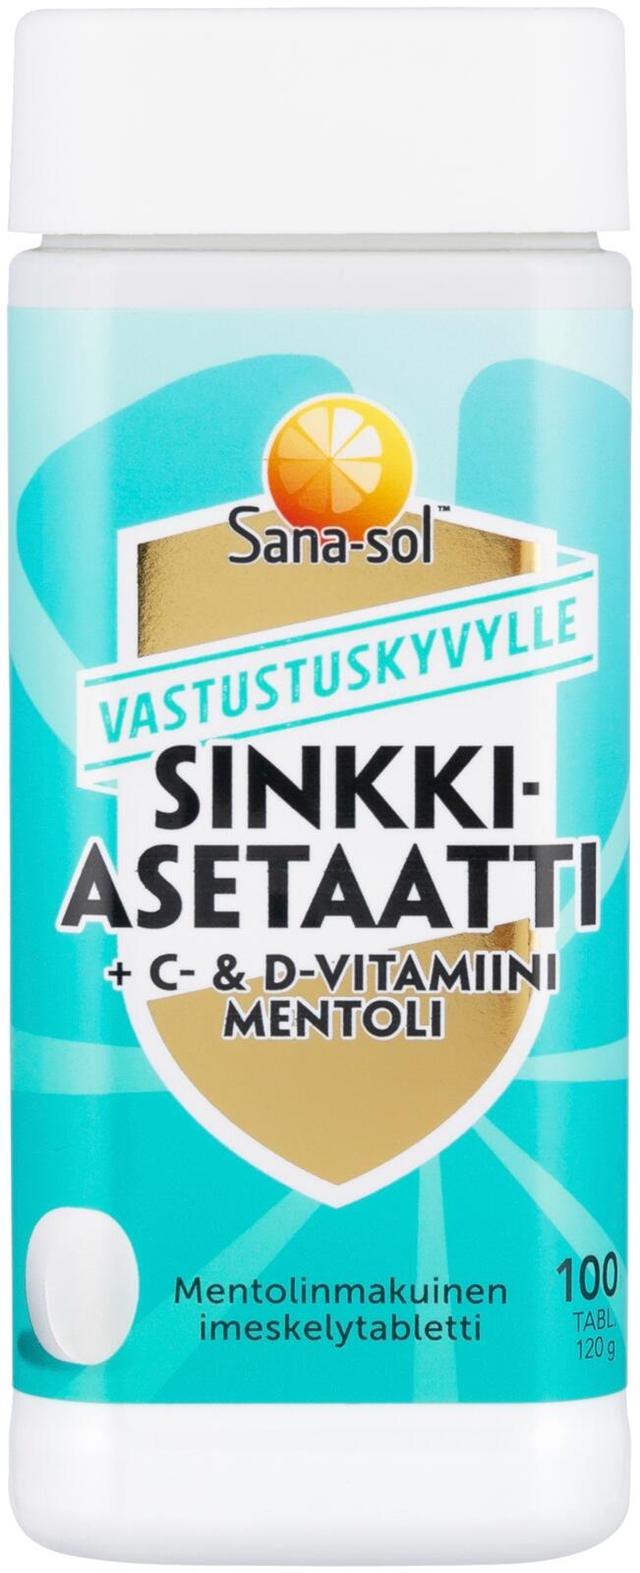 Sana-sol Sinkkiasetaatti+C&D-vitamiini Mentoli imeskelytabletti ravintolisä 100tabl/120g